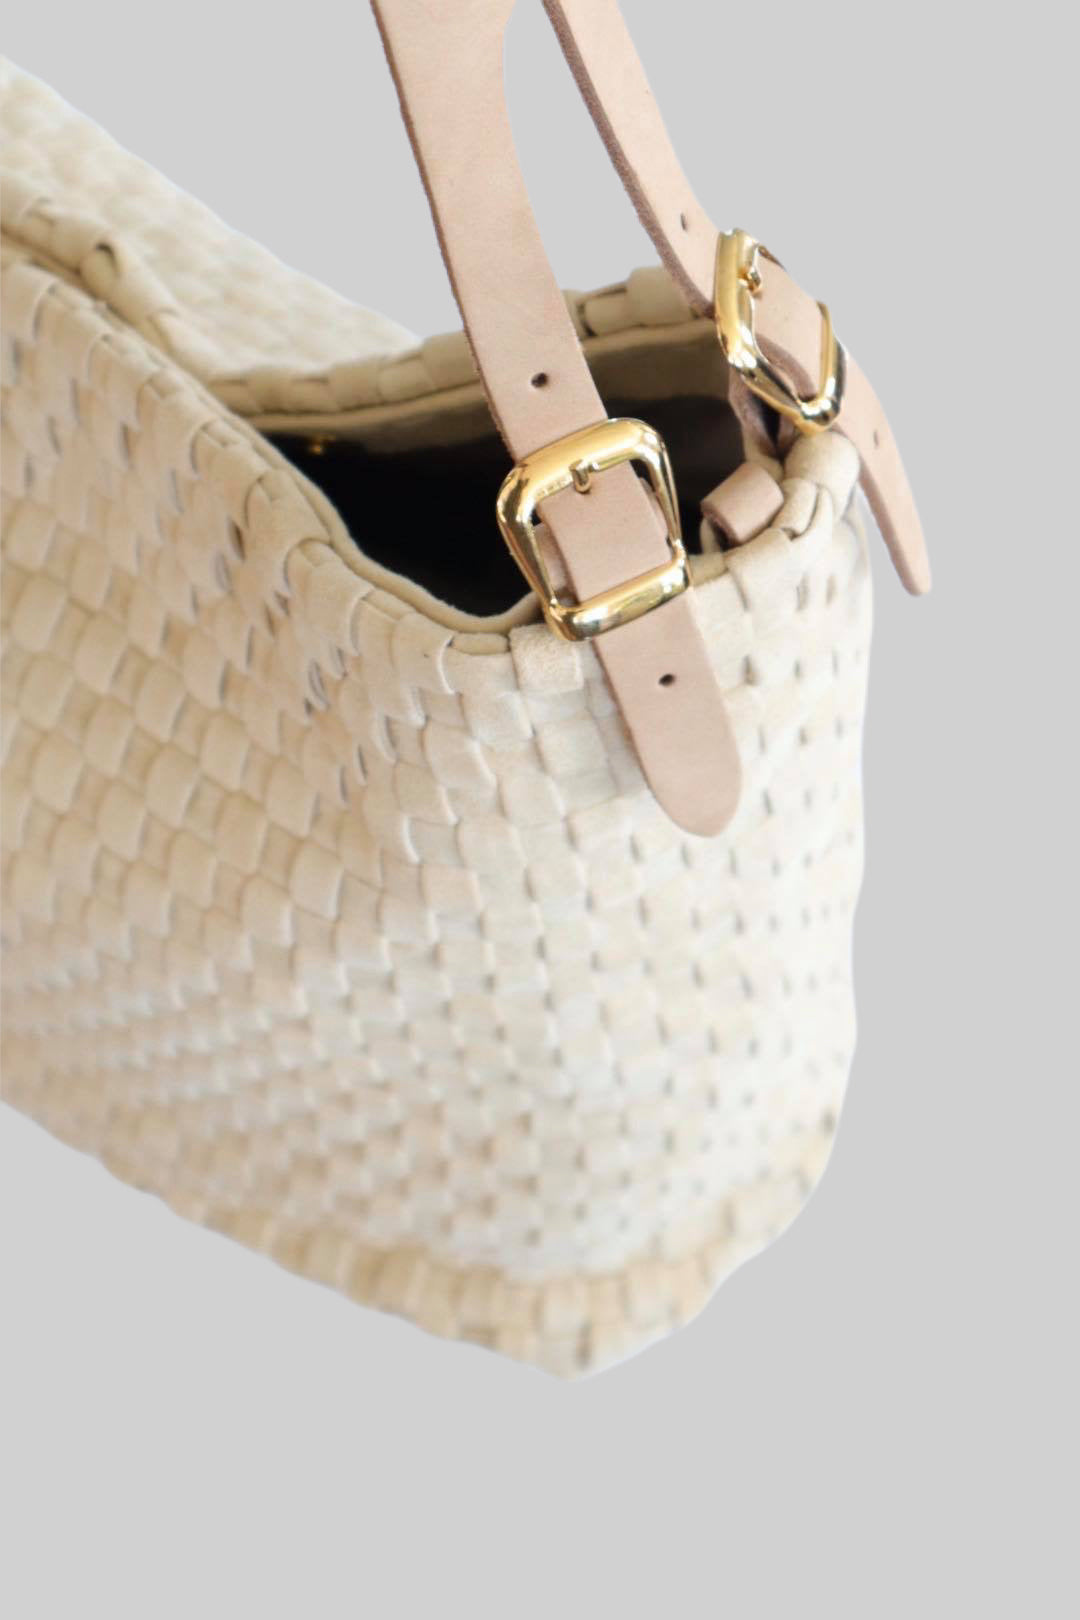 Bildet gir et nærbilde av sidene på Ribichini Camper-skinnvesken, med detaljert flettet skinn og elegante gulldetaljer, som viser veskens sofistikerte utførelse og materialkvalitet.